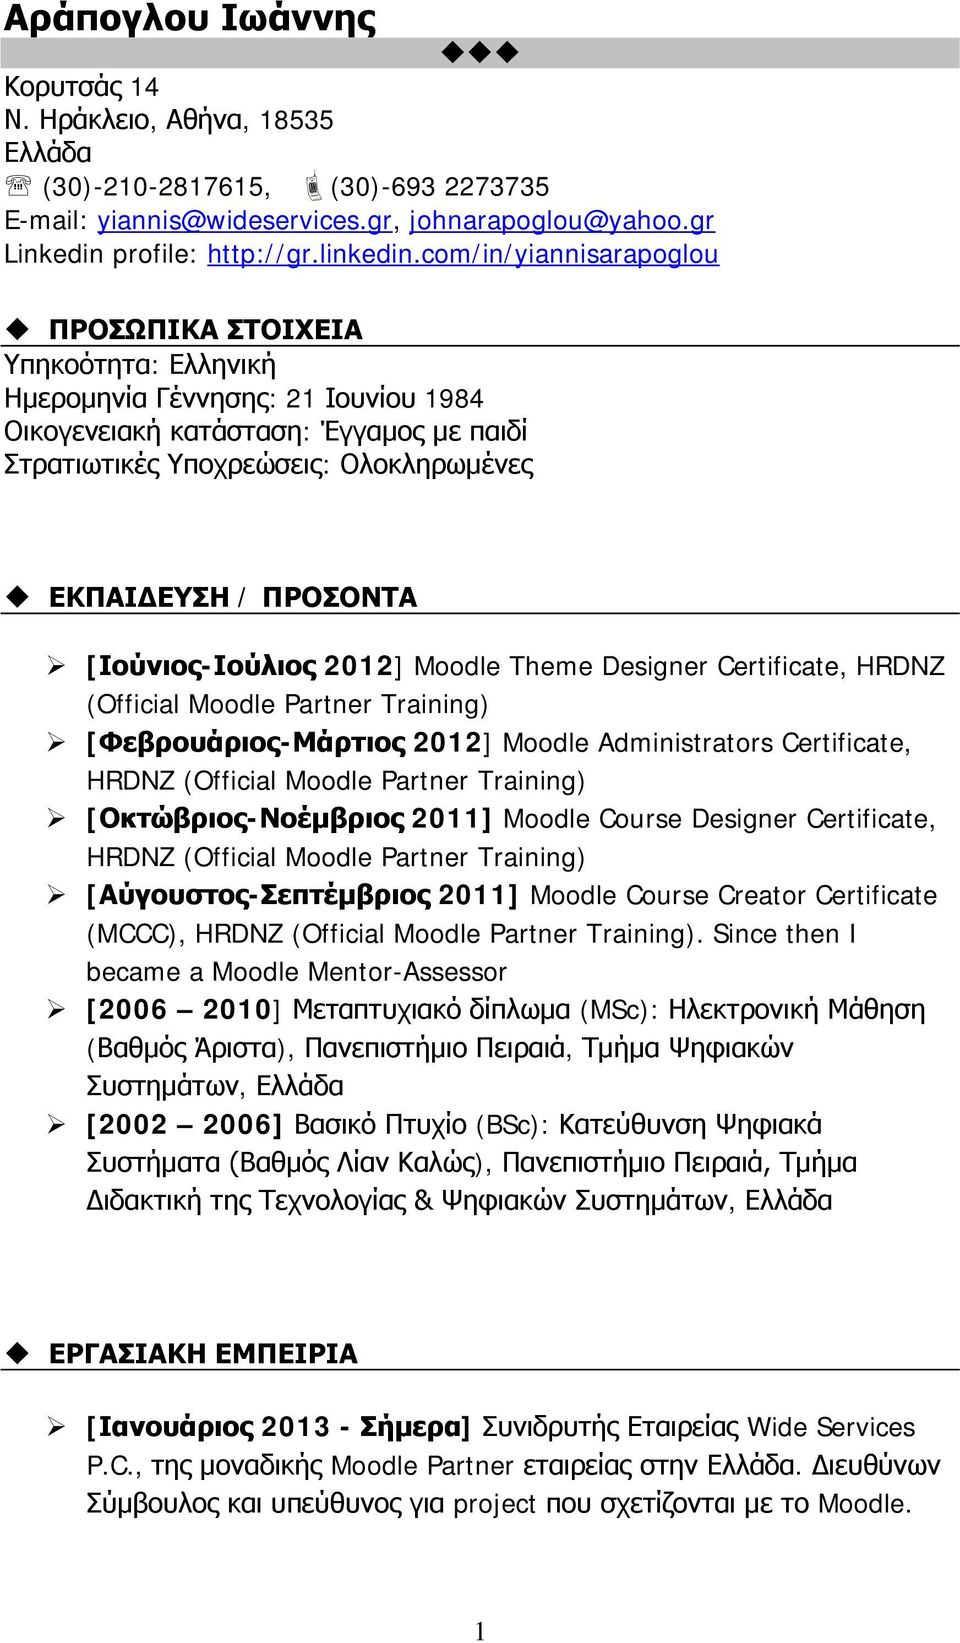 ΠΡΟΣΟΝΤΑ [Ιούνιος-Ιούλιος 2012] Moodle Theme Designer Certificate, HRDNZ (Official Moodle Partner Training) [Φεβρουάριος-Μάρτιος 2012] Moodle Administrators Certificate, HRDNZ (Official Moodle